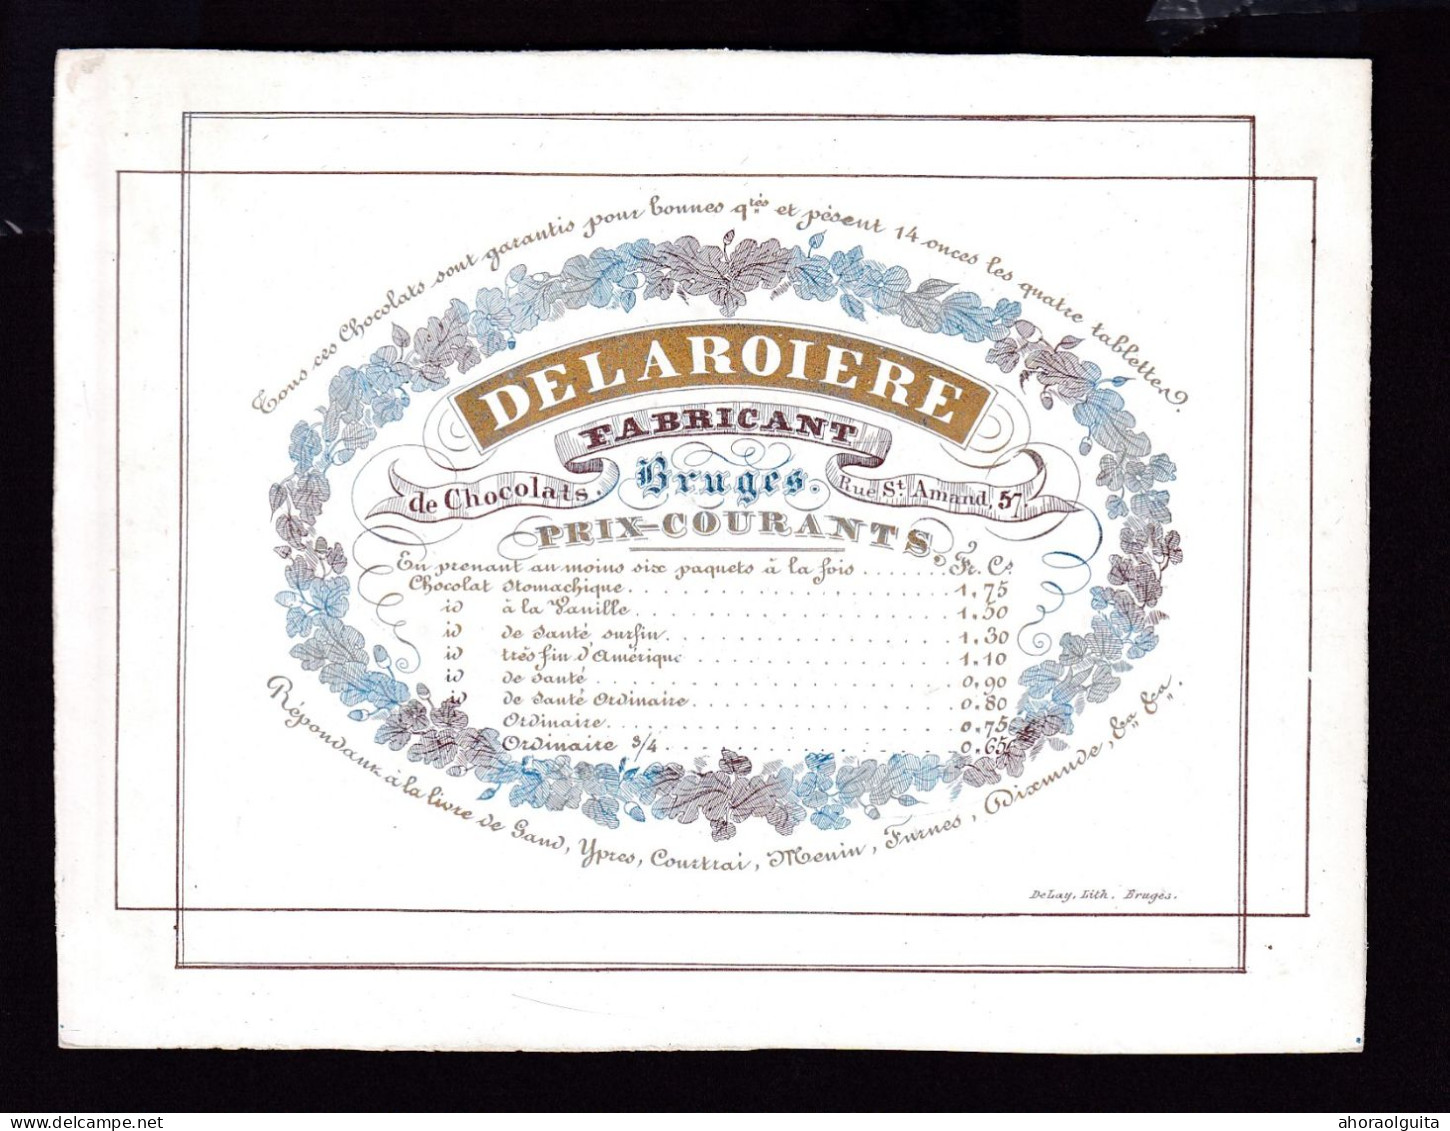 584/29 -- BRUGES CARTE PORCELAINE - Carte Illustrée Delaroiere, Fabricant De Chocolat  - Litho Années1840/50 - Visiting Cards